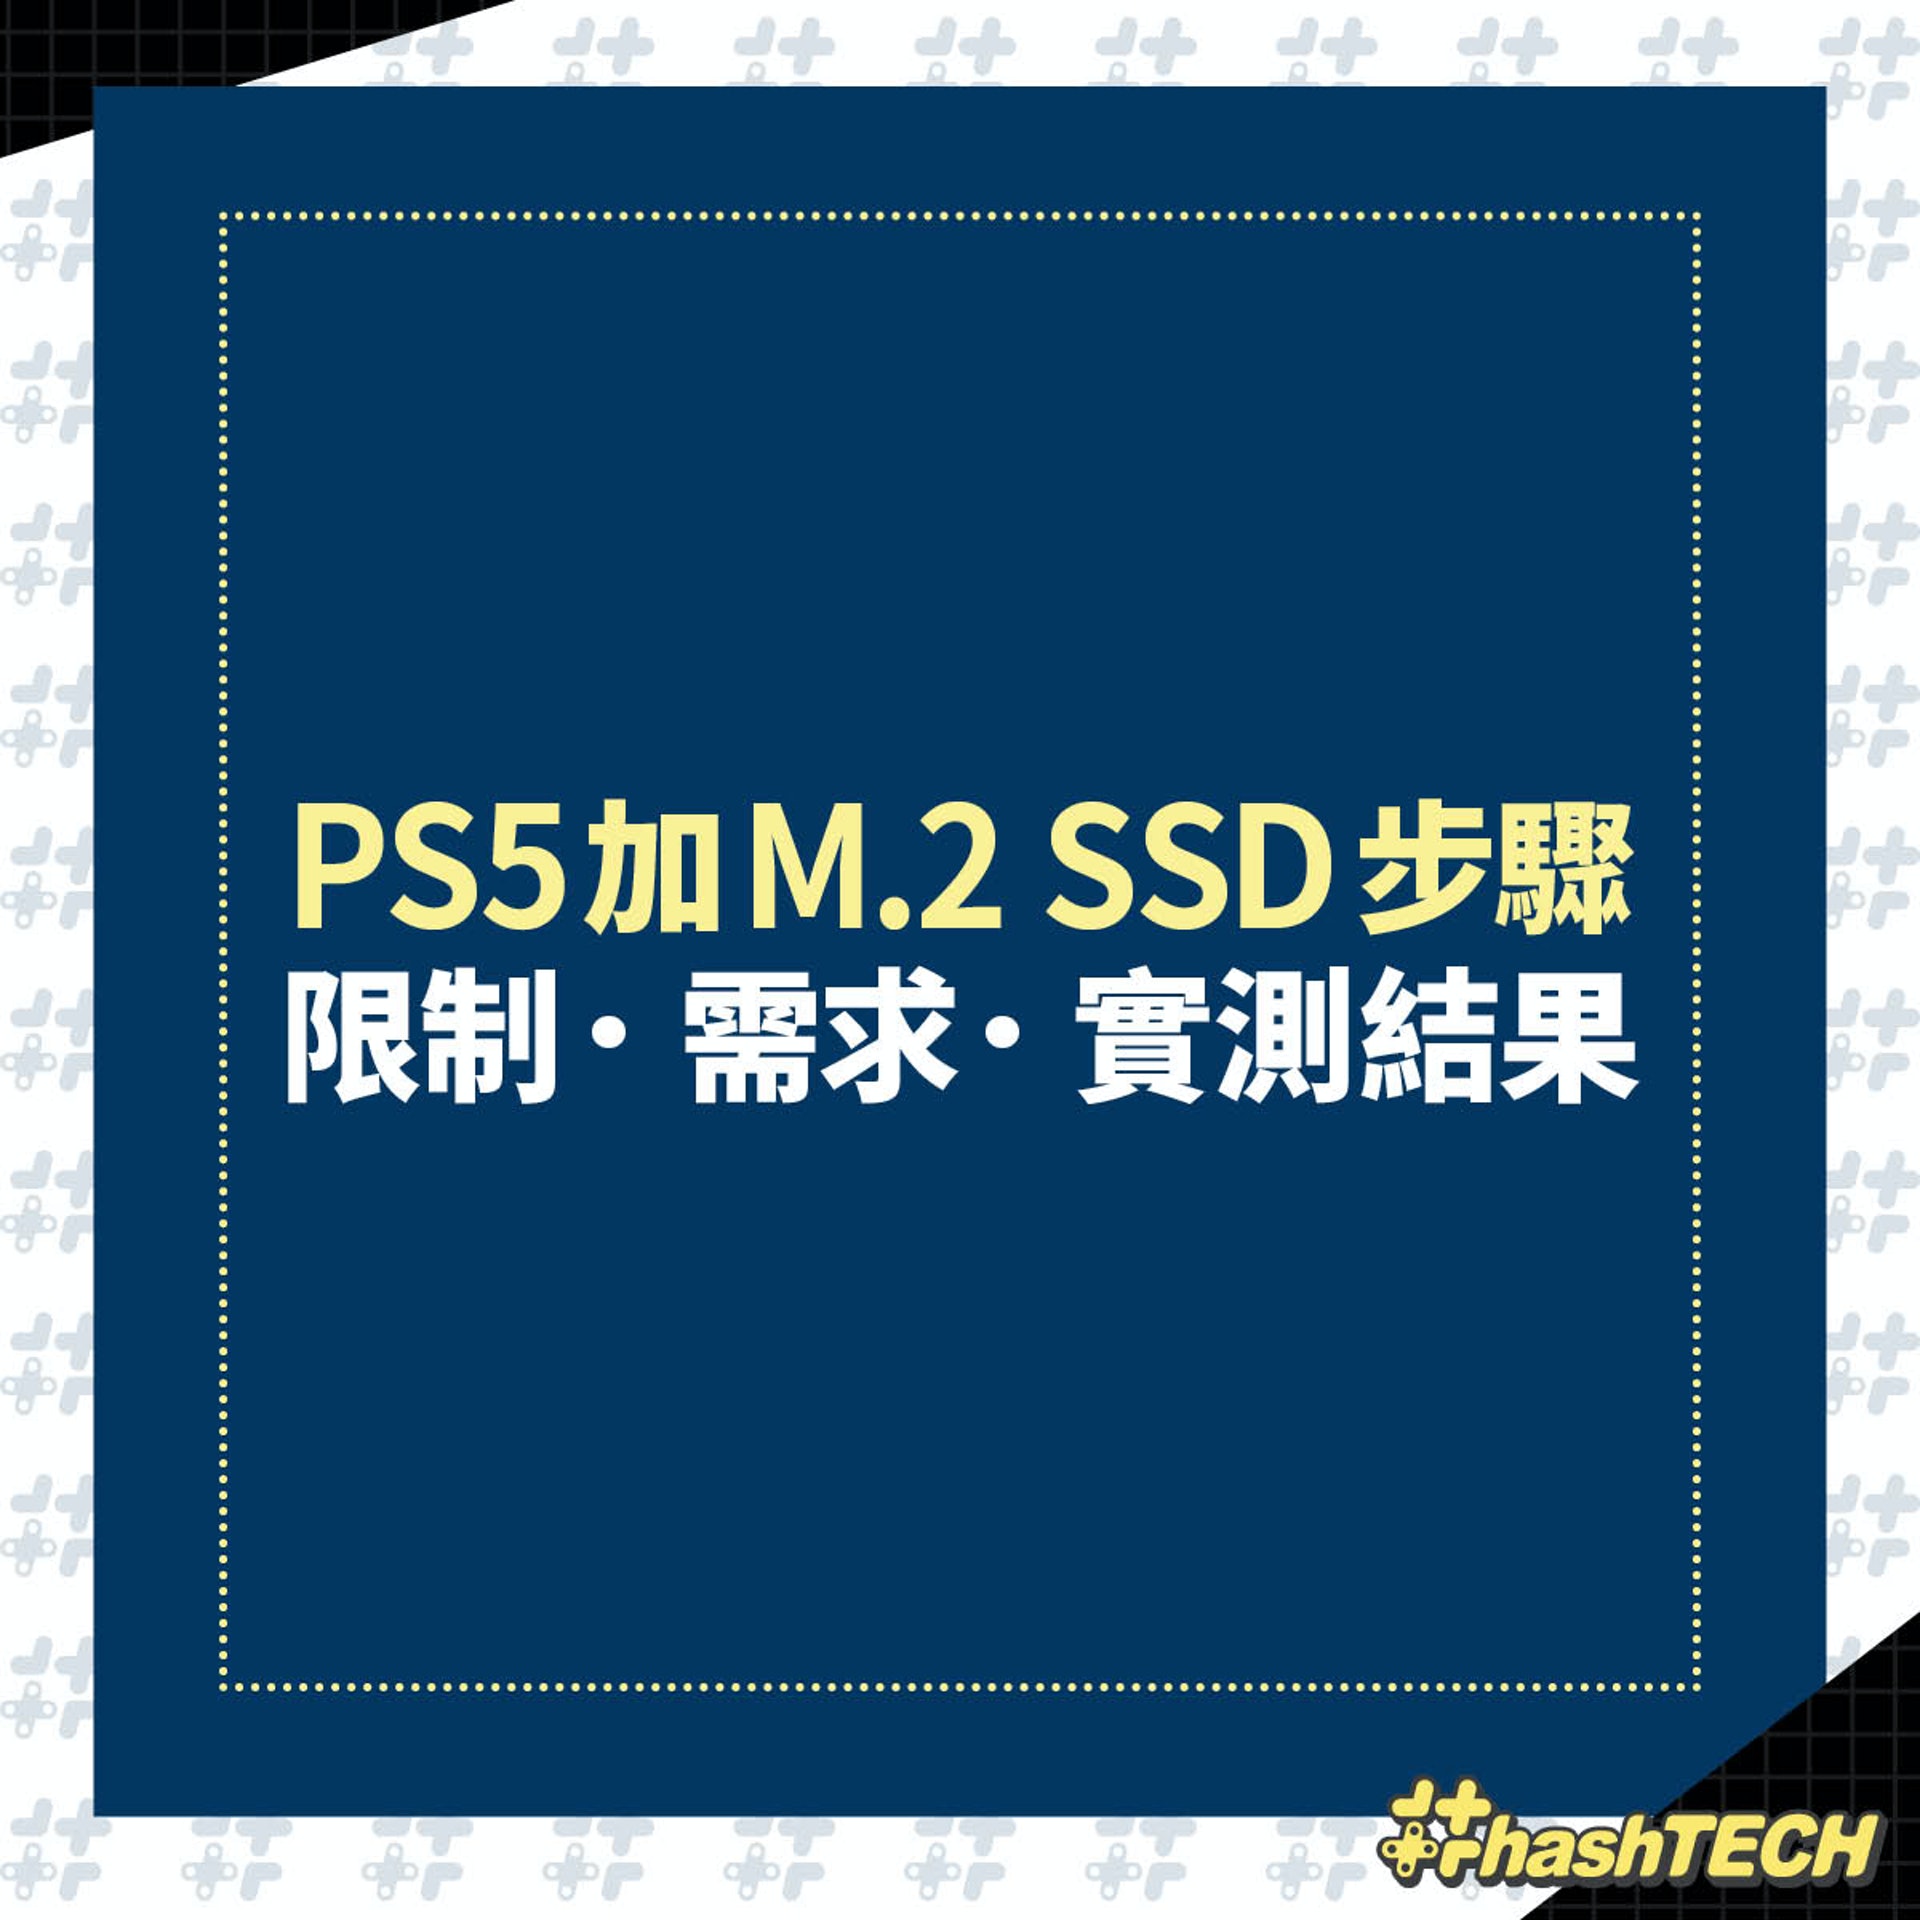 PS5加M.2 SSD步驟
限制．需求．實測結果